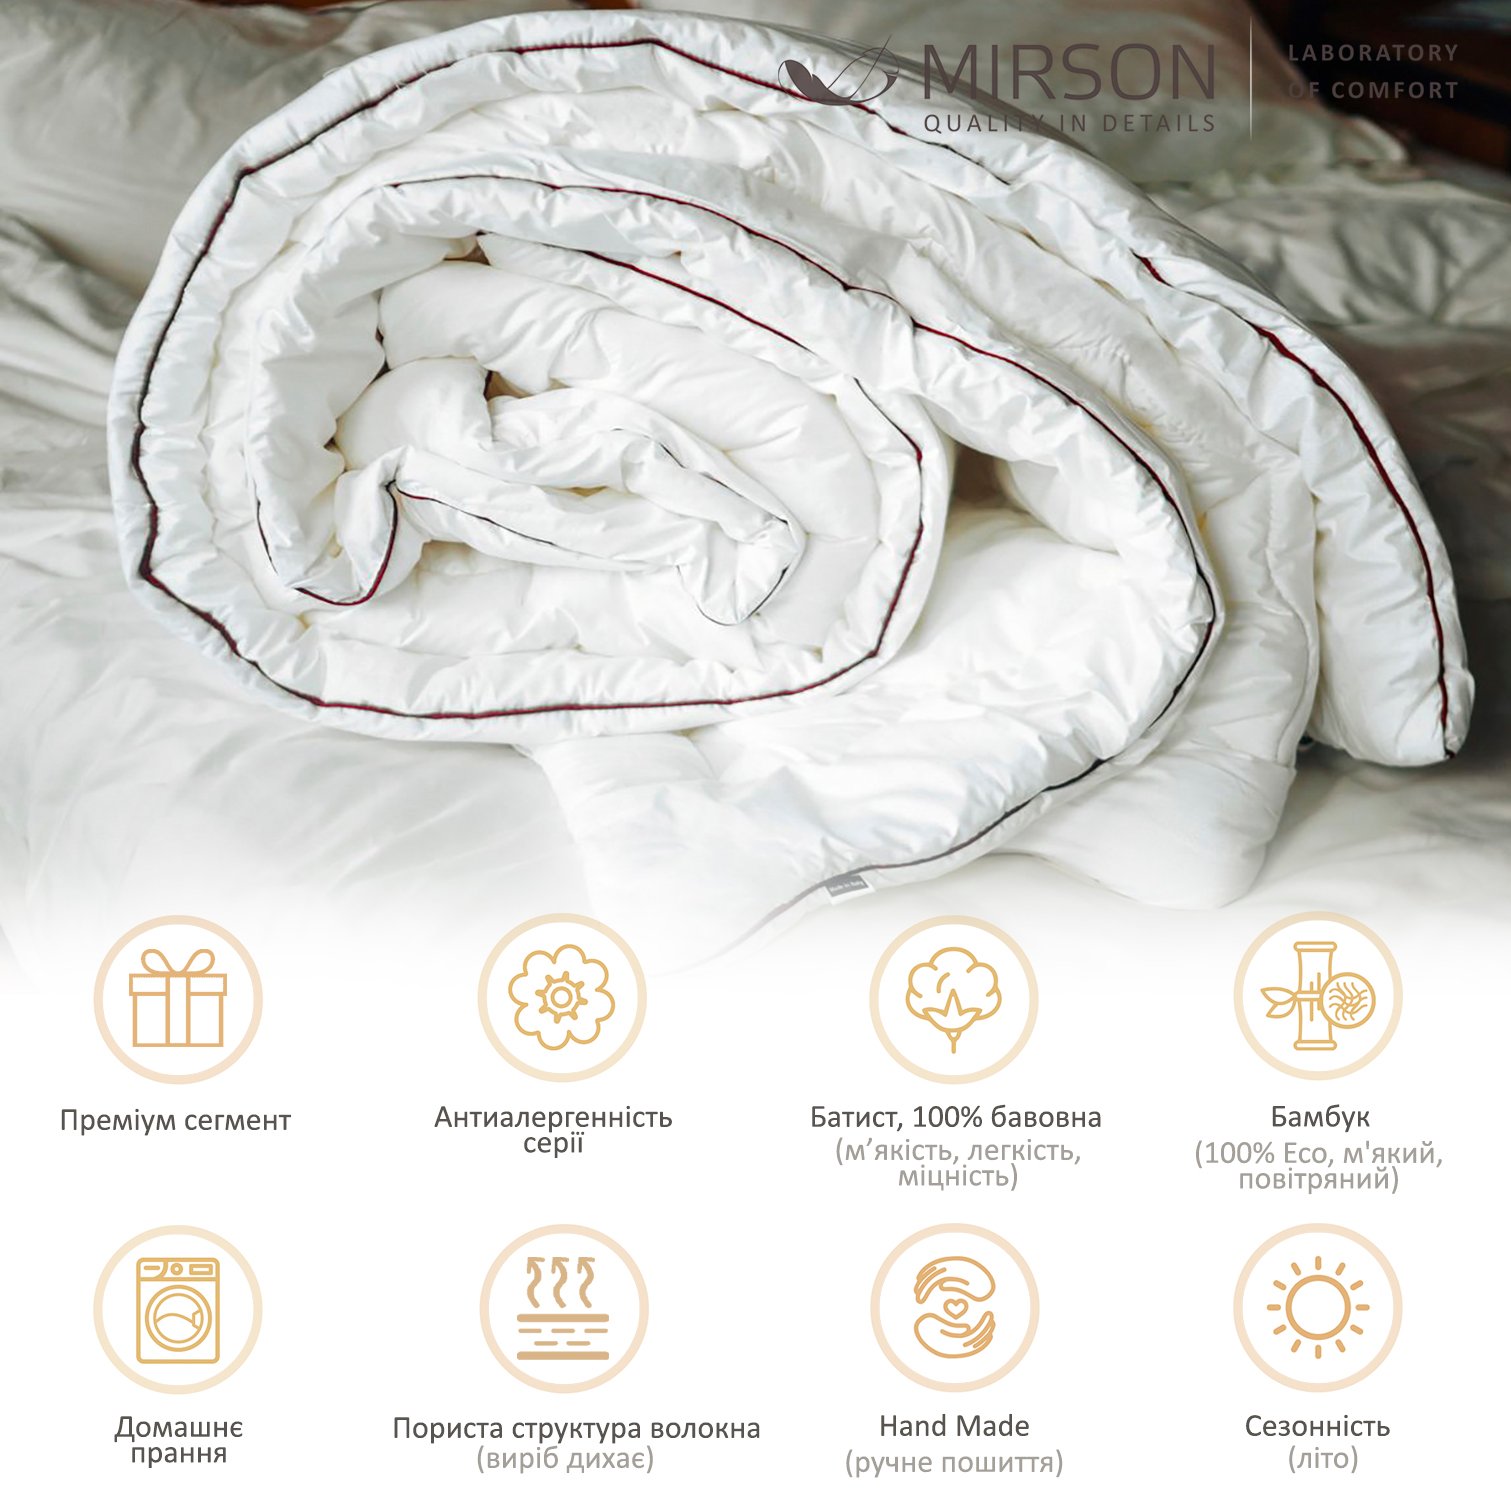 Одеяло бамбуковое MirSon Deluxe Hand Made №0444, летнее, 140x205 см, белое - фото 5